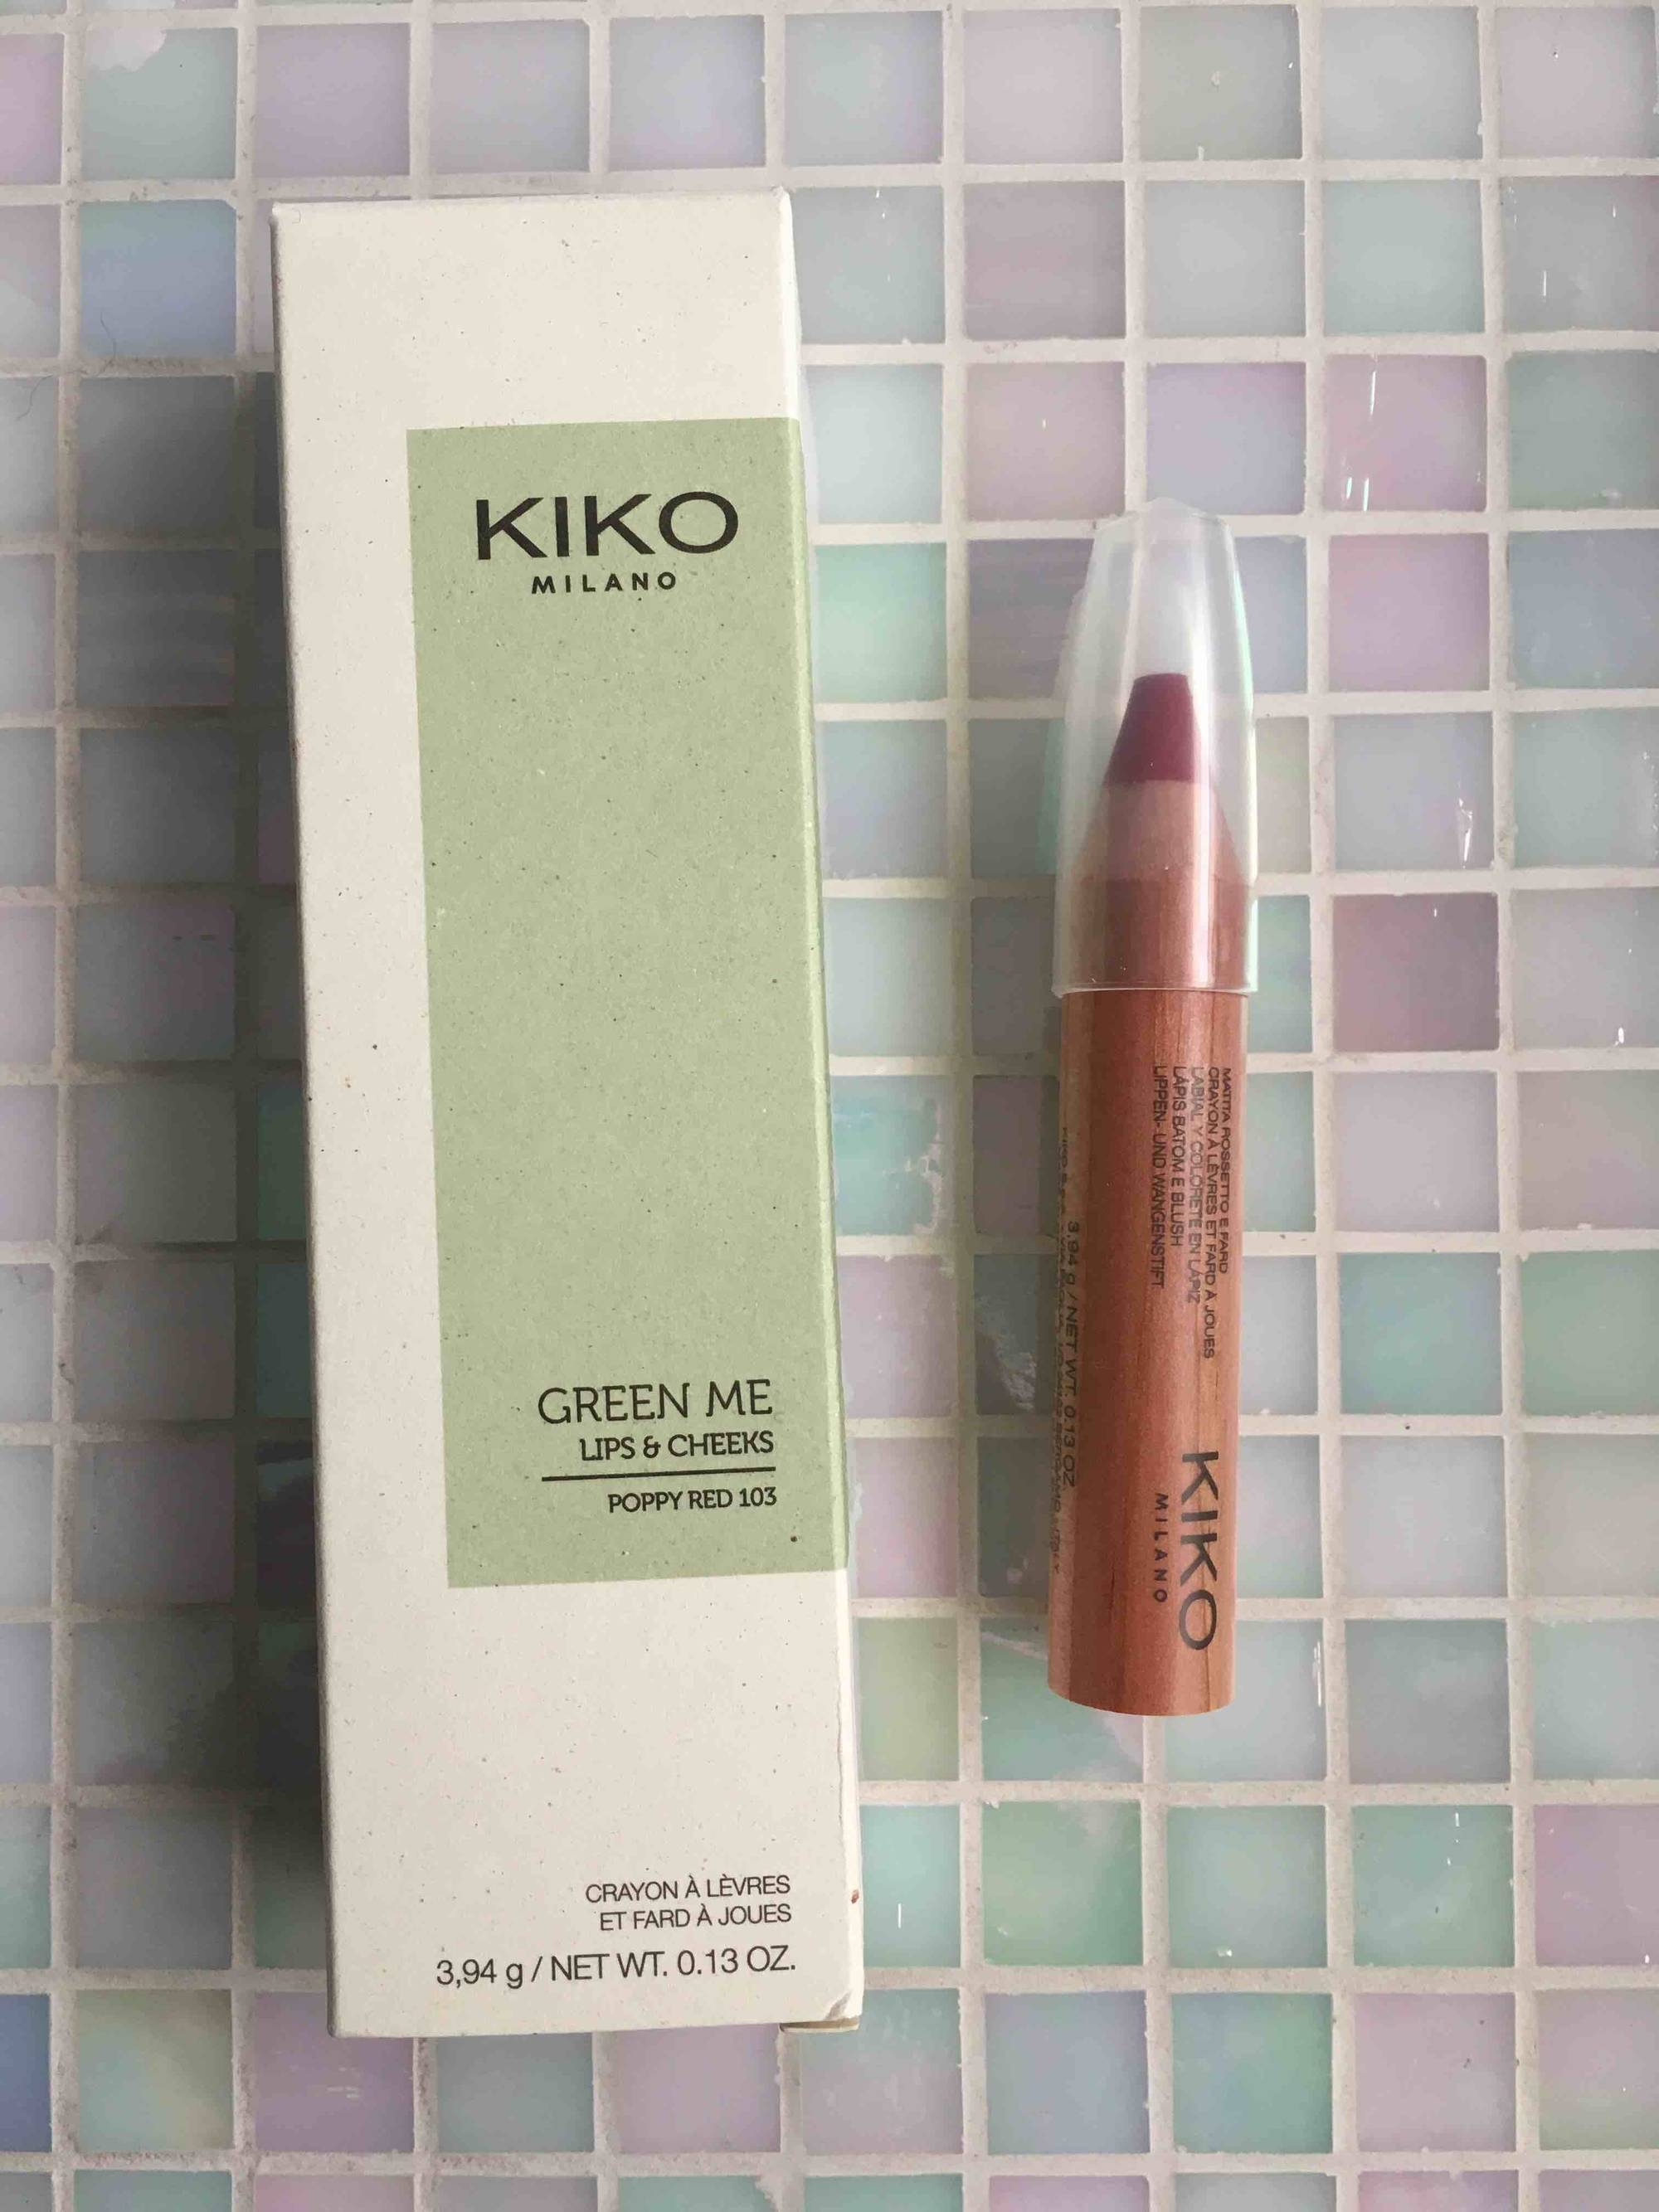 KIKO - Green me - Crayon à lèvres et fard à joues